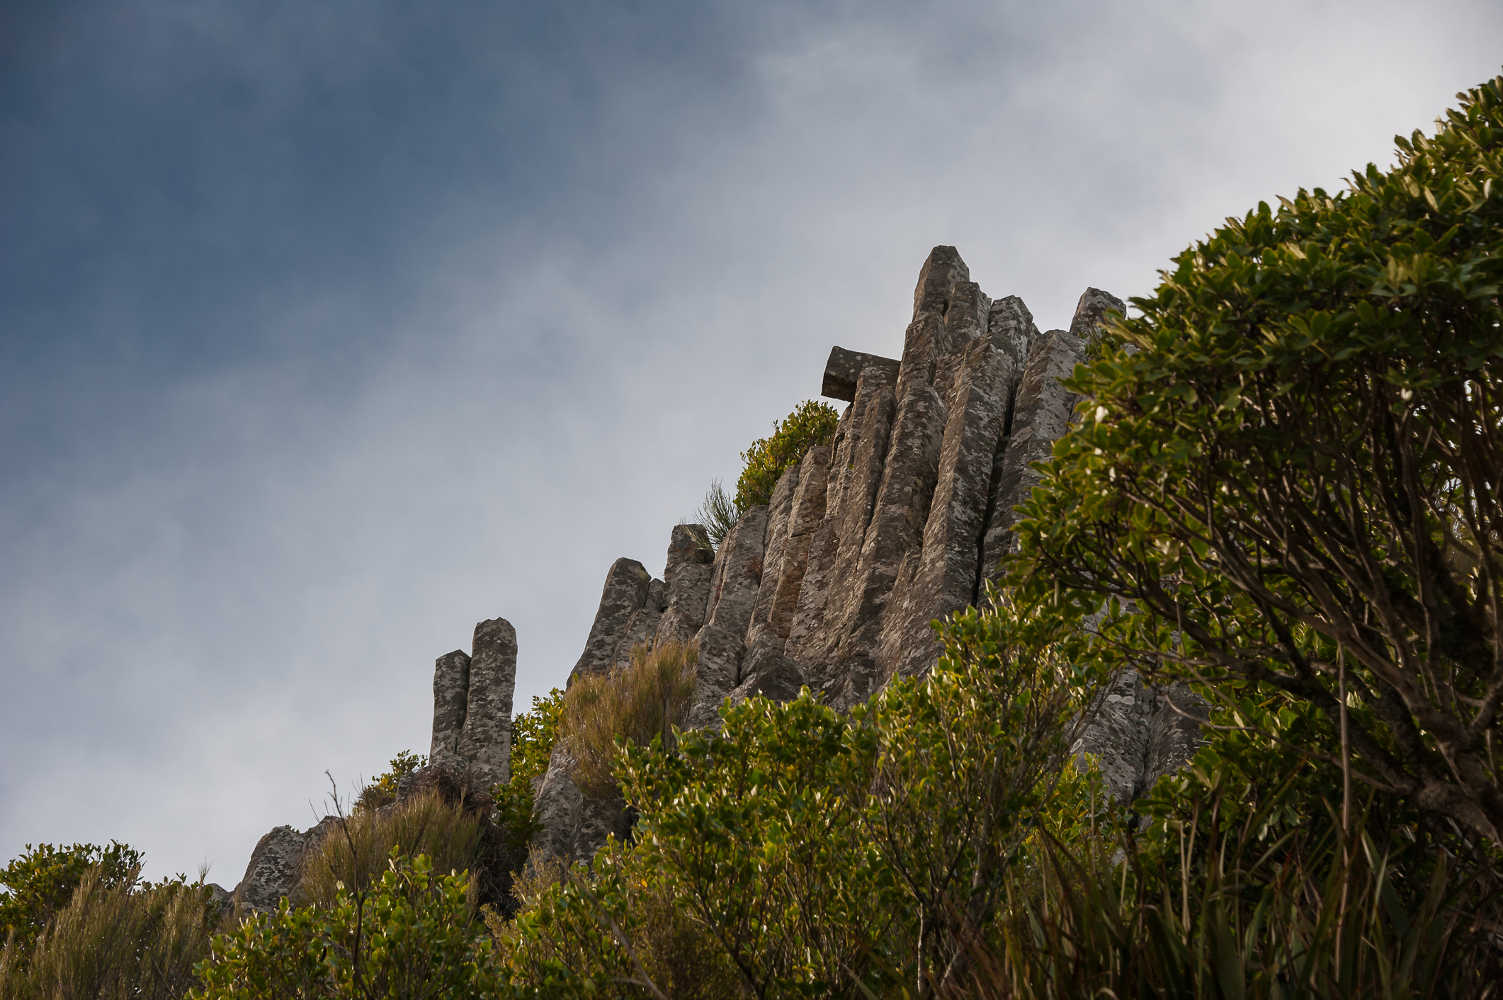 The Organ Pipes, unique basalt columns Mt Cargill, Dunedin, New Zealand